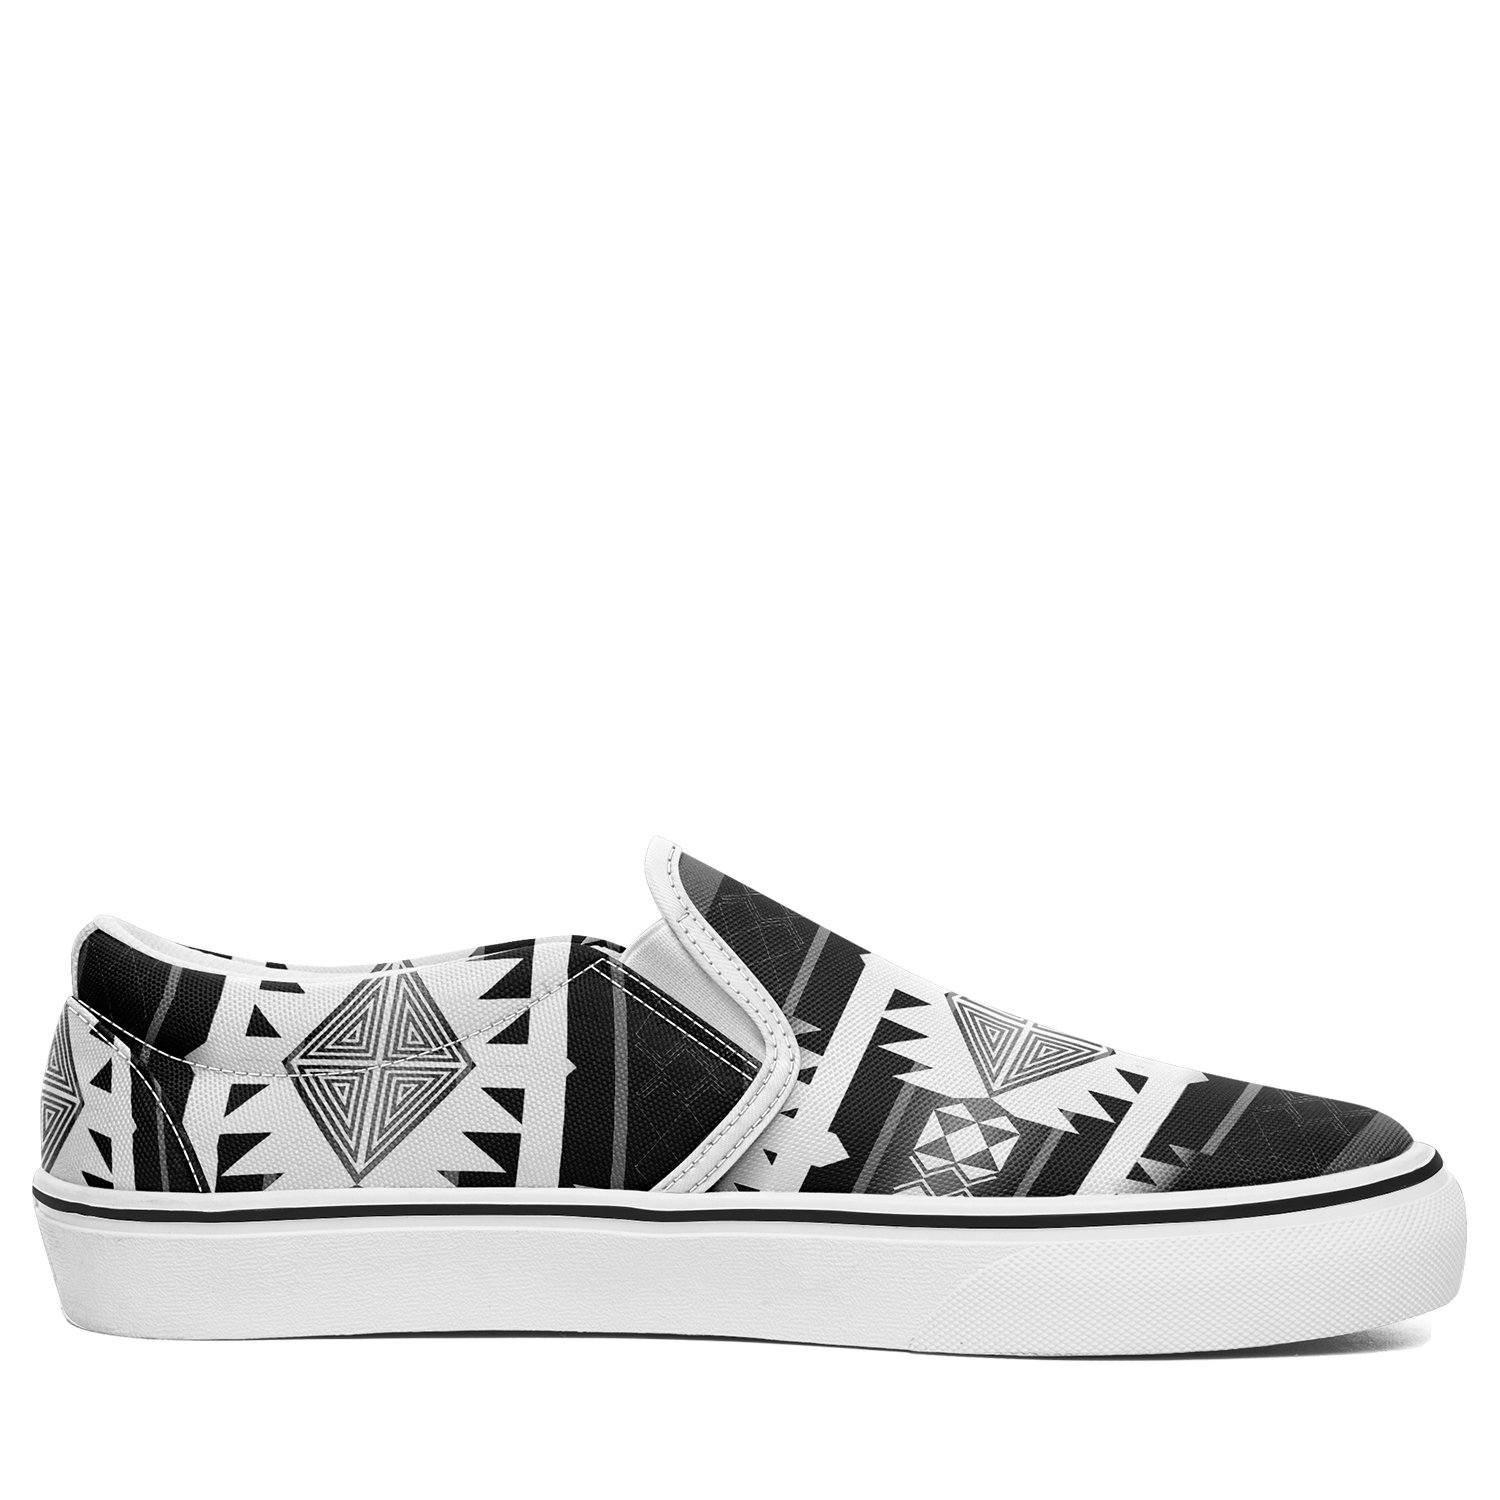 Okotoks Black and White Otoyimm Canvas Slip On Shoes 49 Dzine 